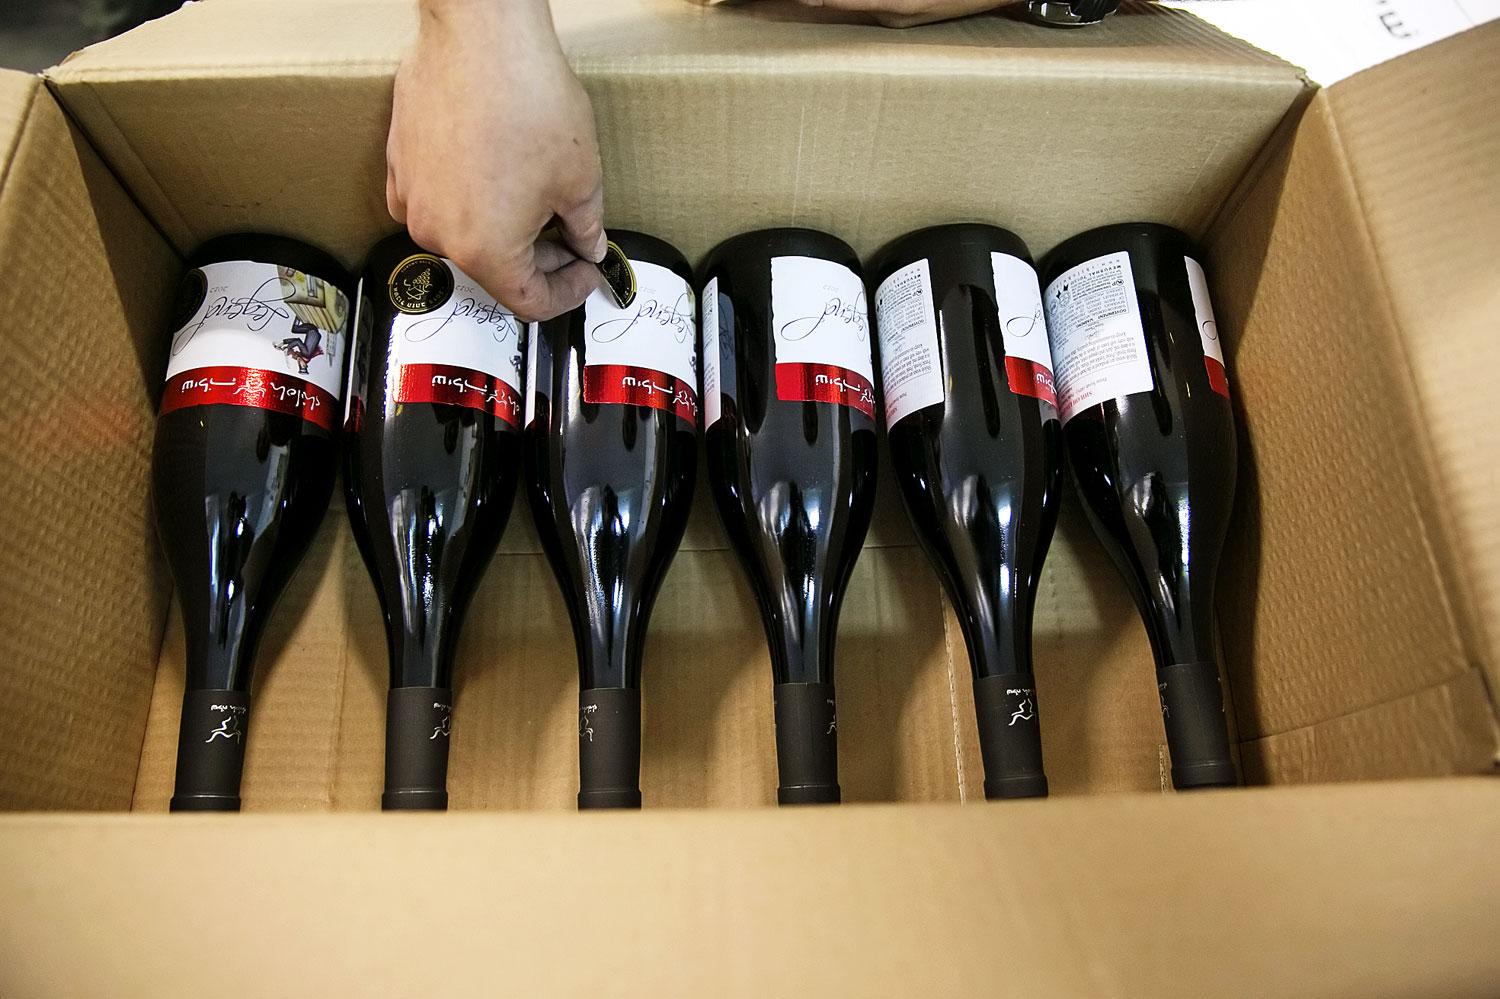 Címkézés a ciszjordániai Shiloh borászatban, amely évente ötvenezer palackot exportál